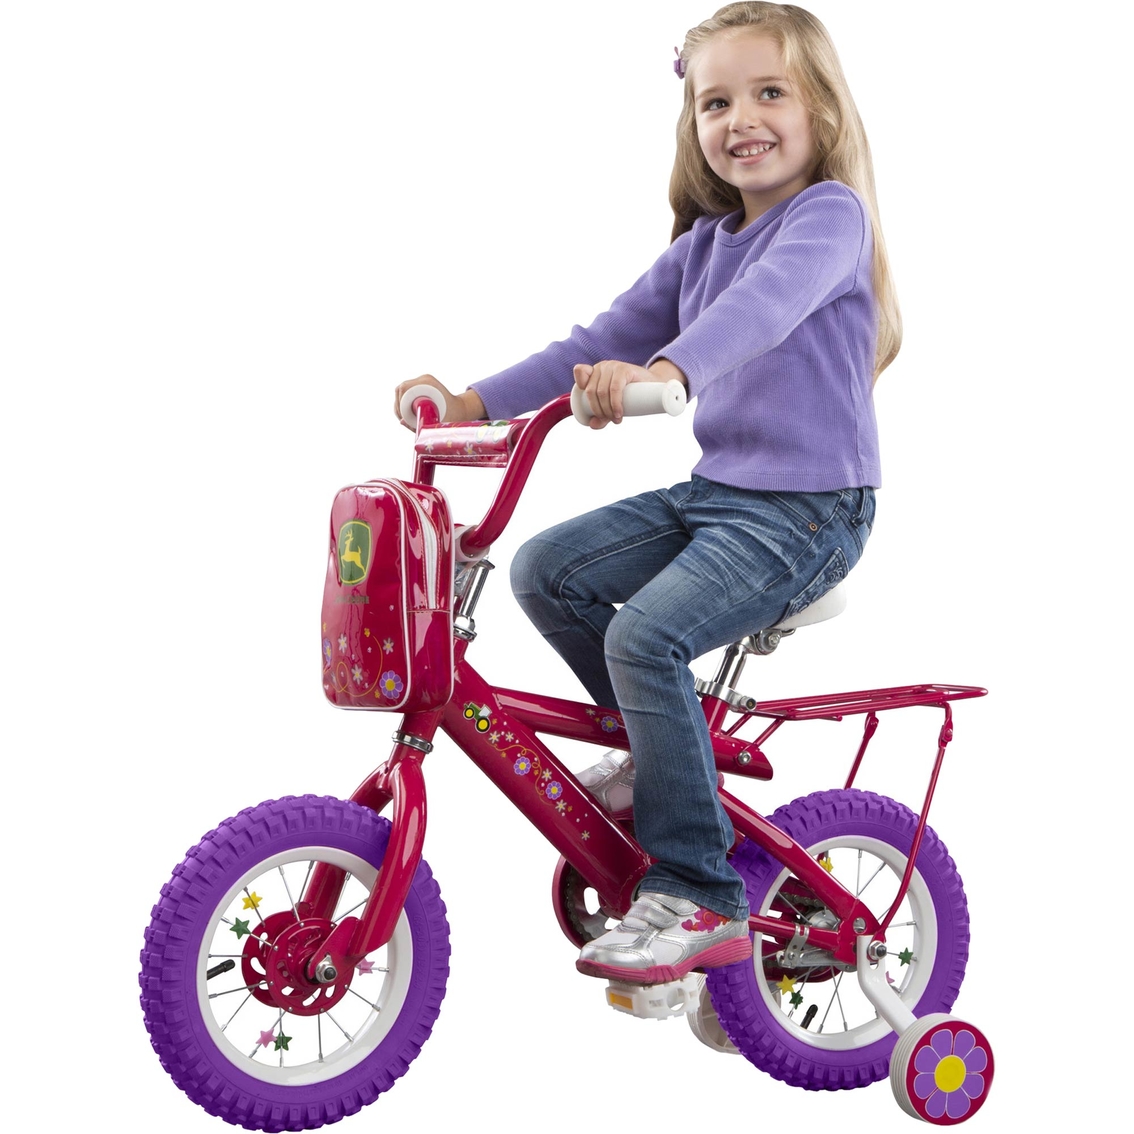 TOMY John Deere 12 in. Girls Bicycle, Pink - Image 2 of 3